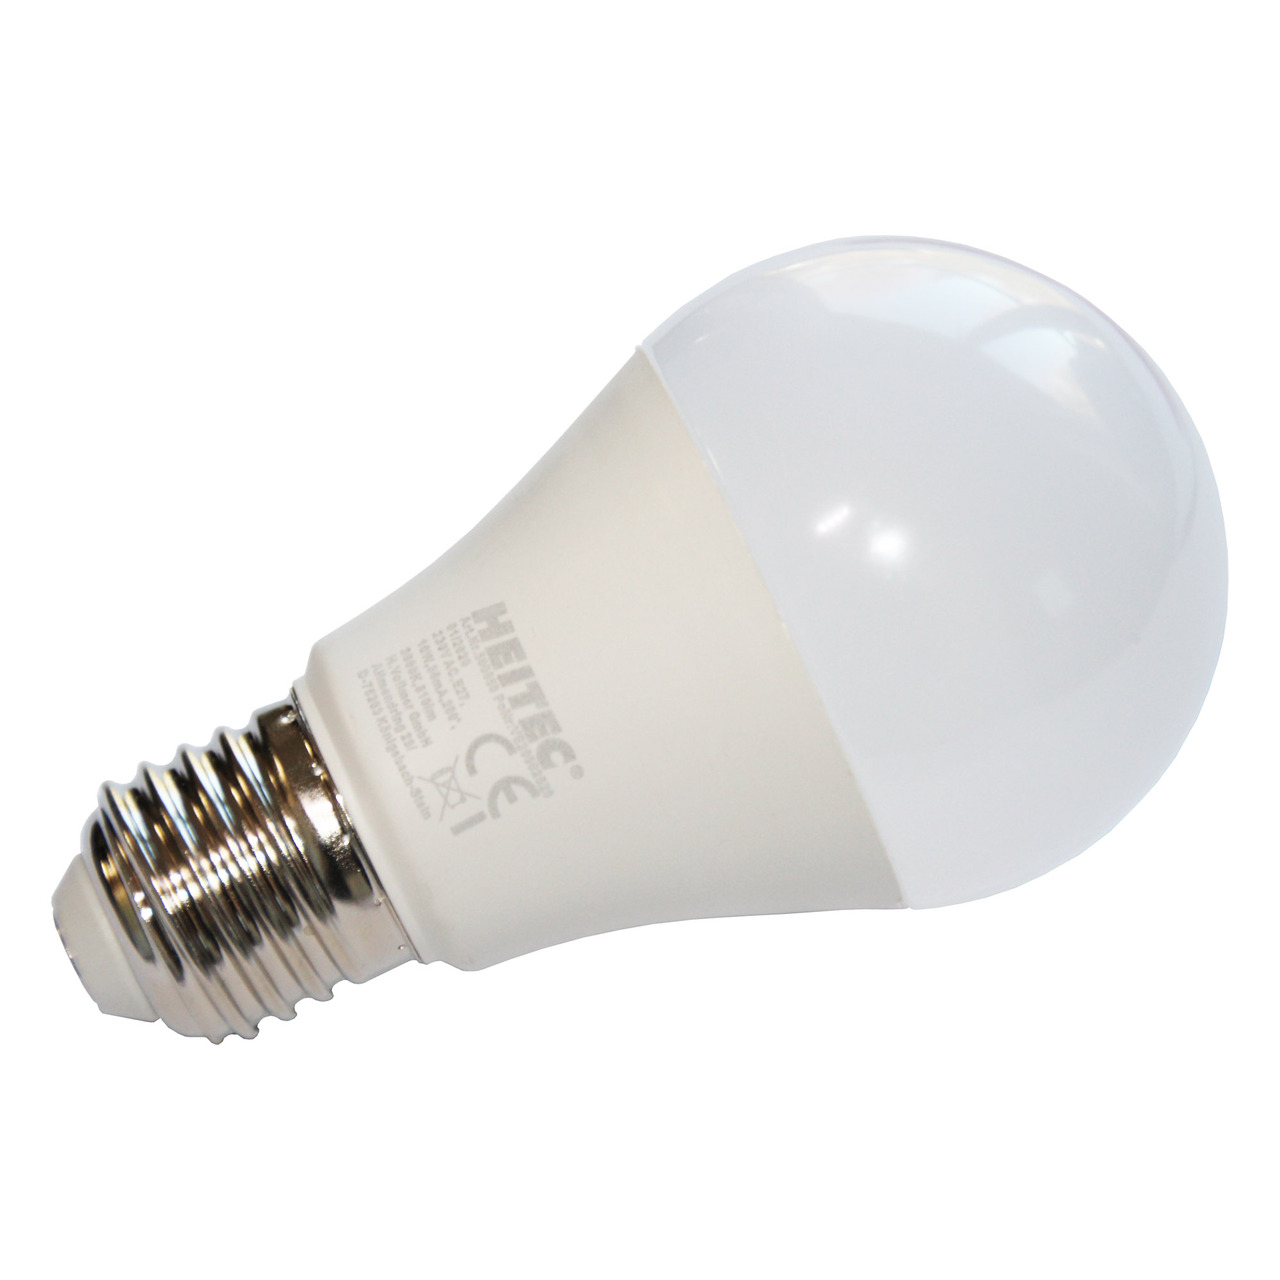 HEITEC 10-W-LED-Lampe A60- E27- 810 lm- warmweiss- matt unter Beleuchtung